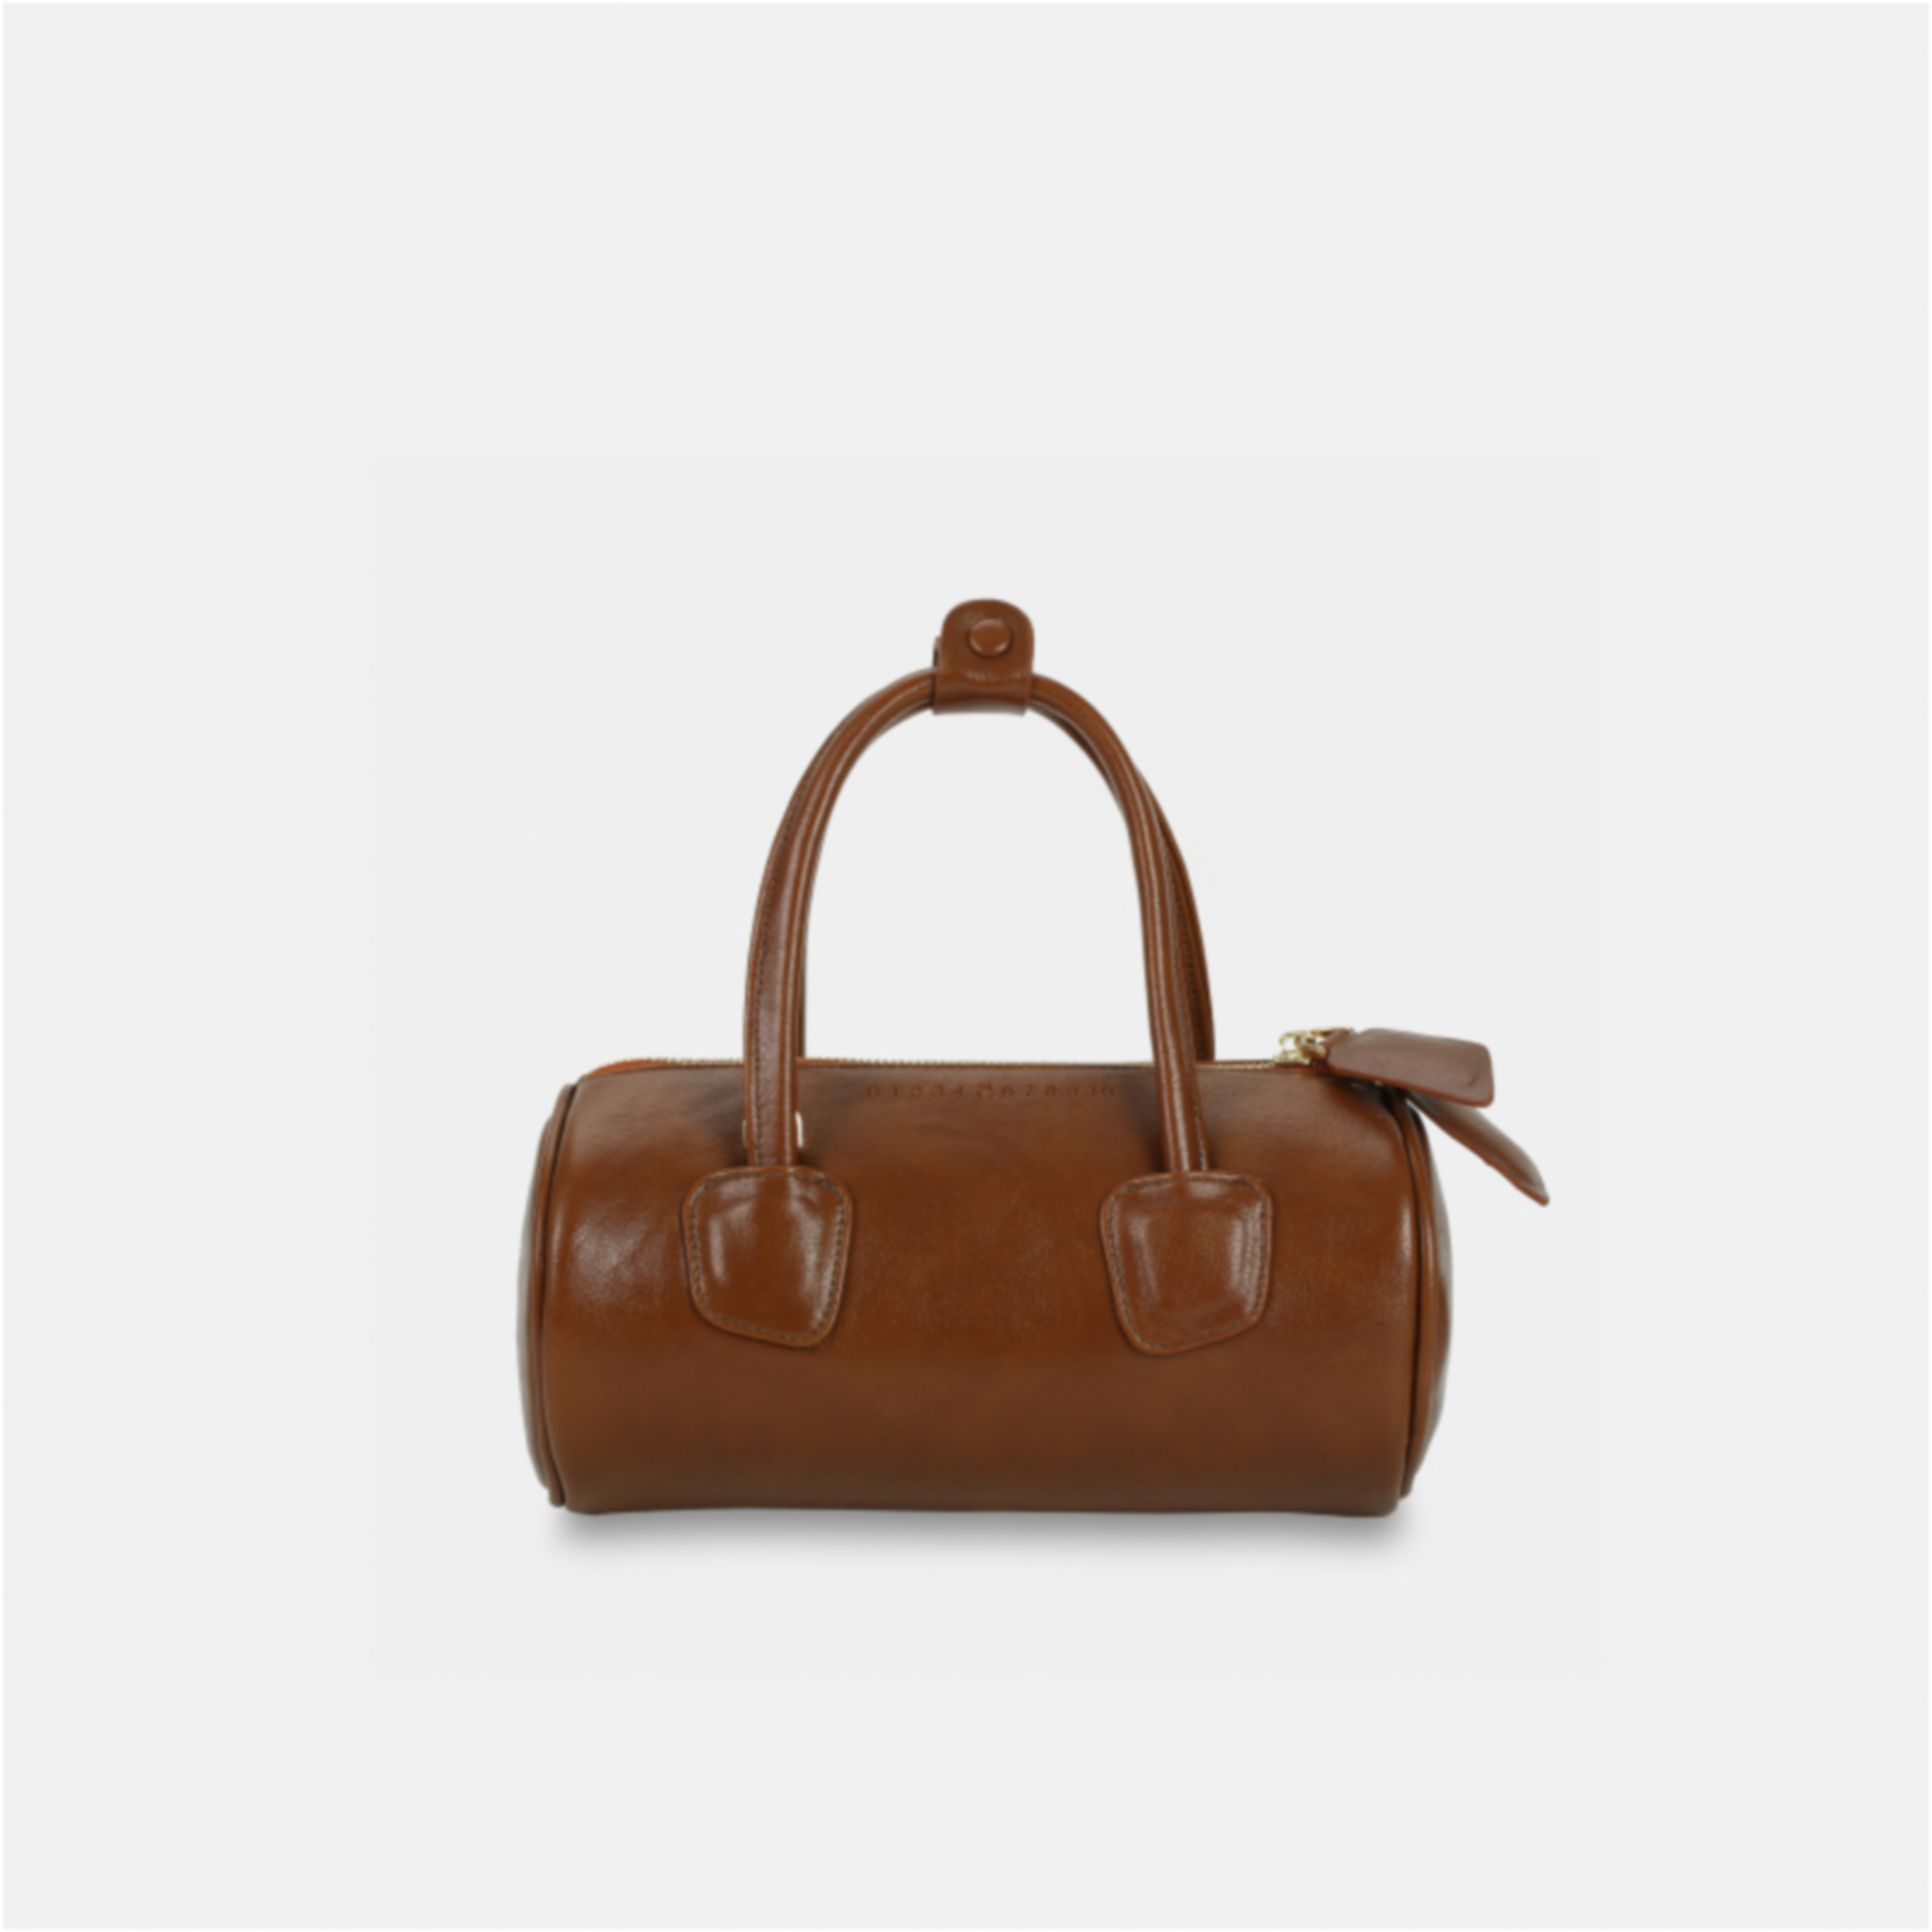 Brown ROLL handbag